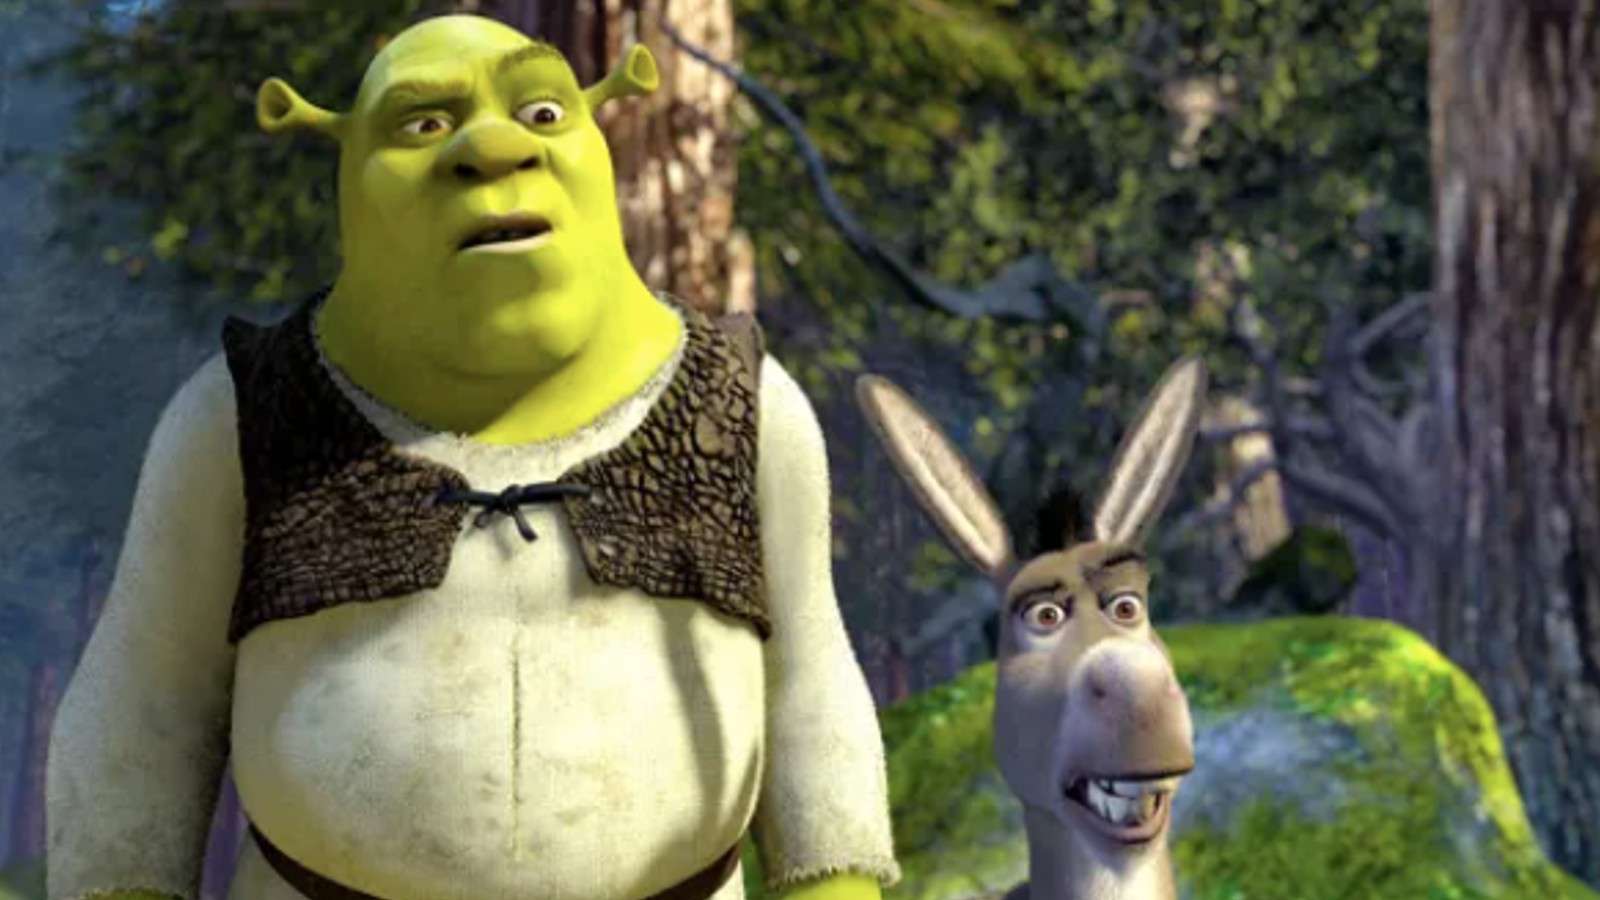 Shrek and Donkey in Shrek 2